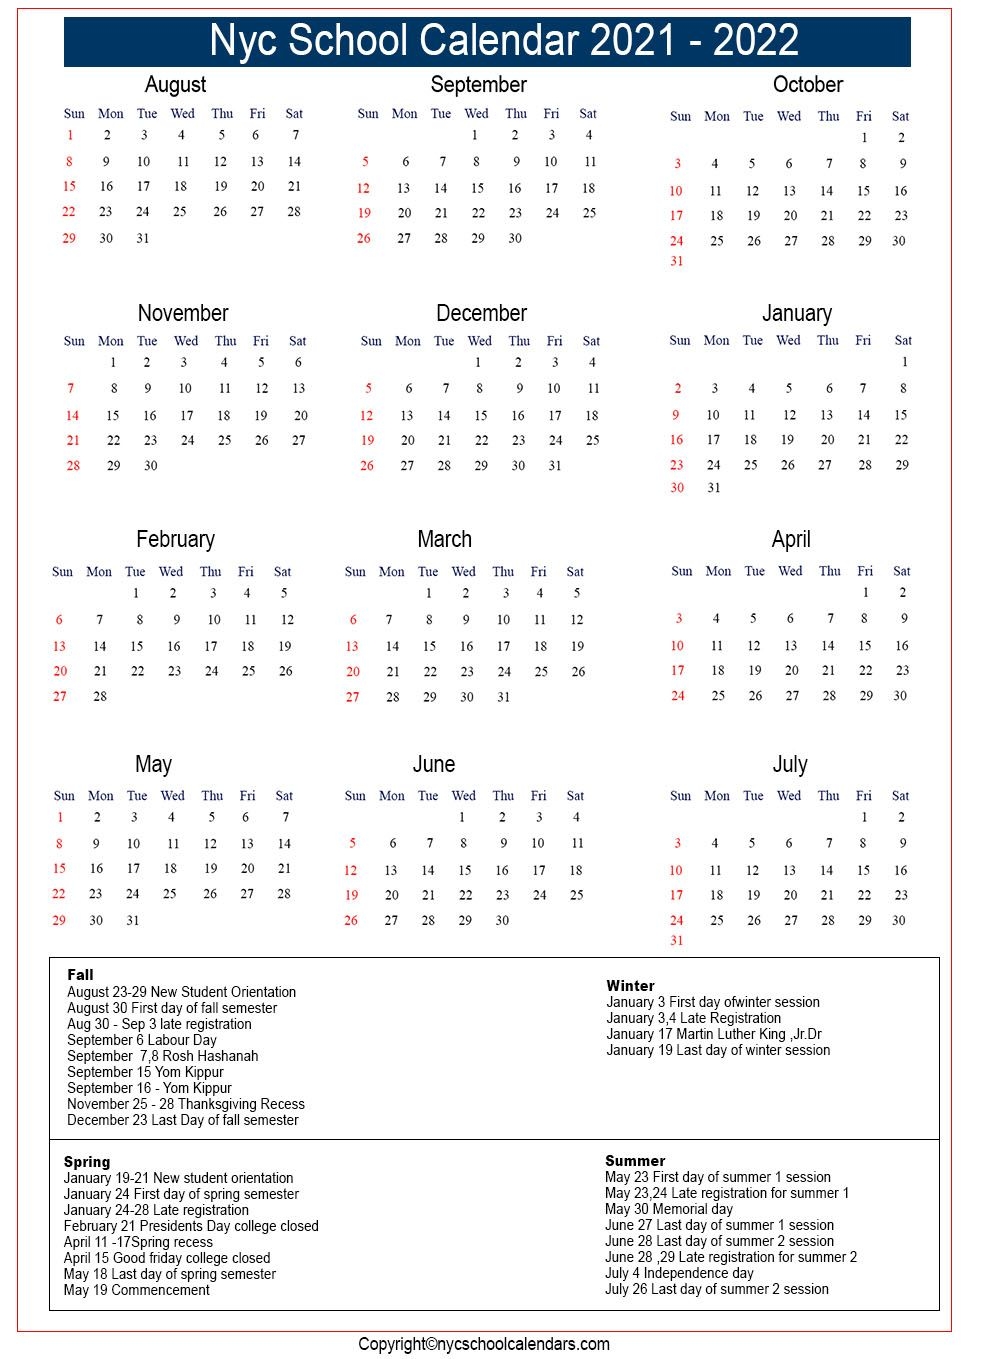 Nyc Public School Calendar 2020 2021 | Free 2021 Printable